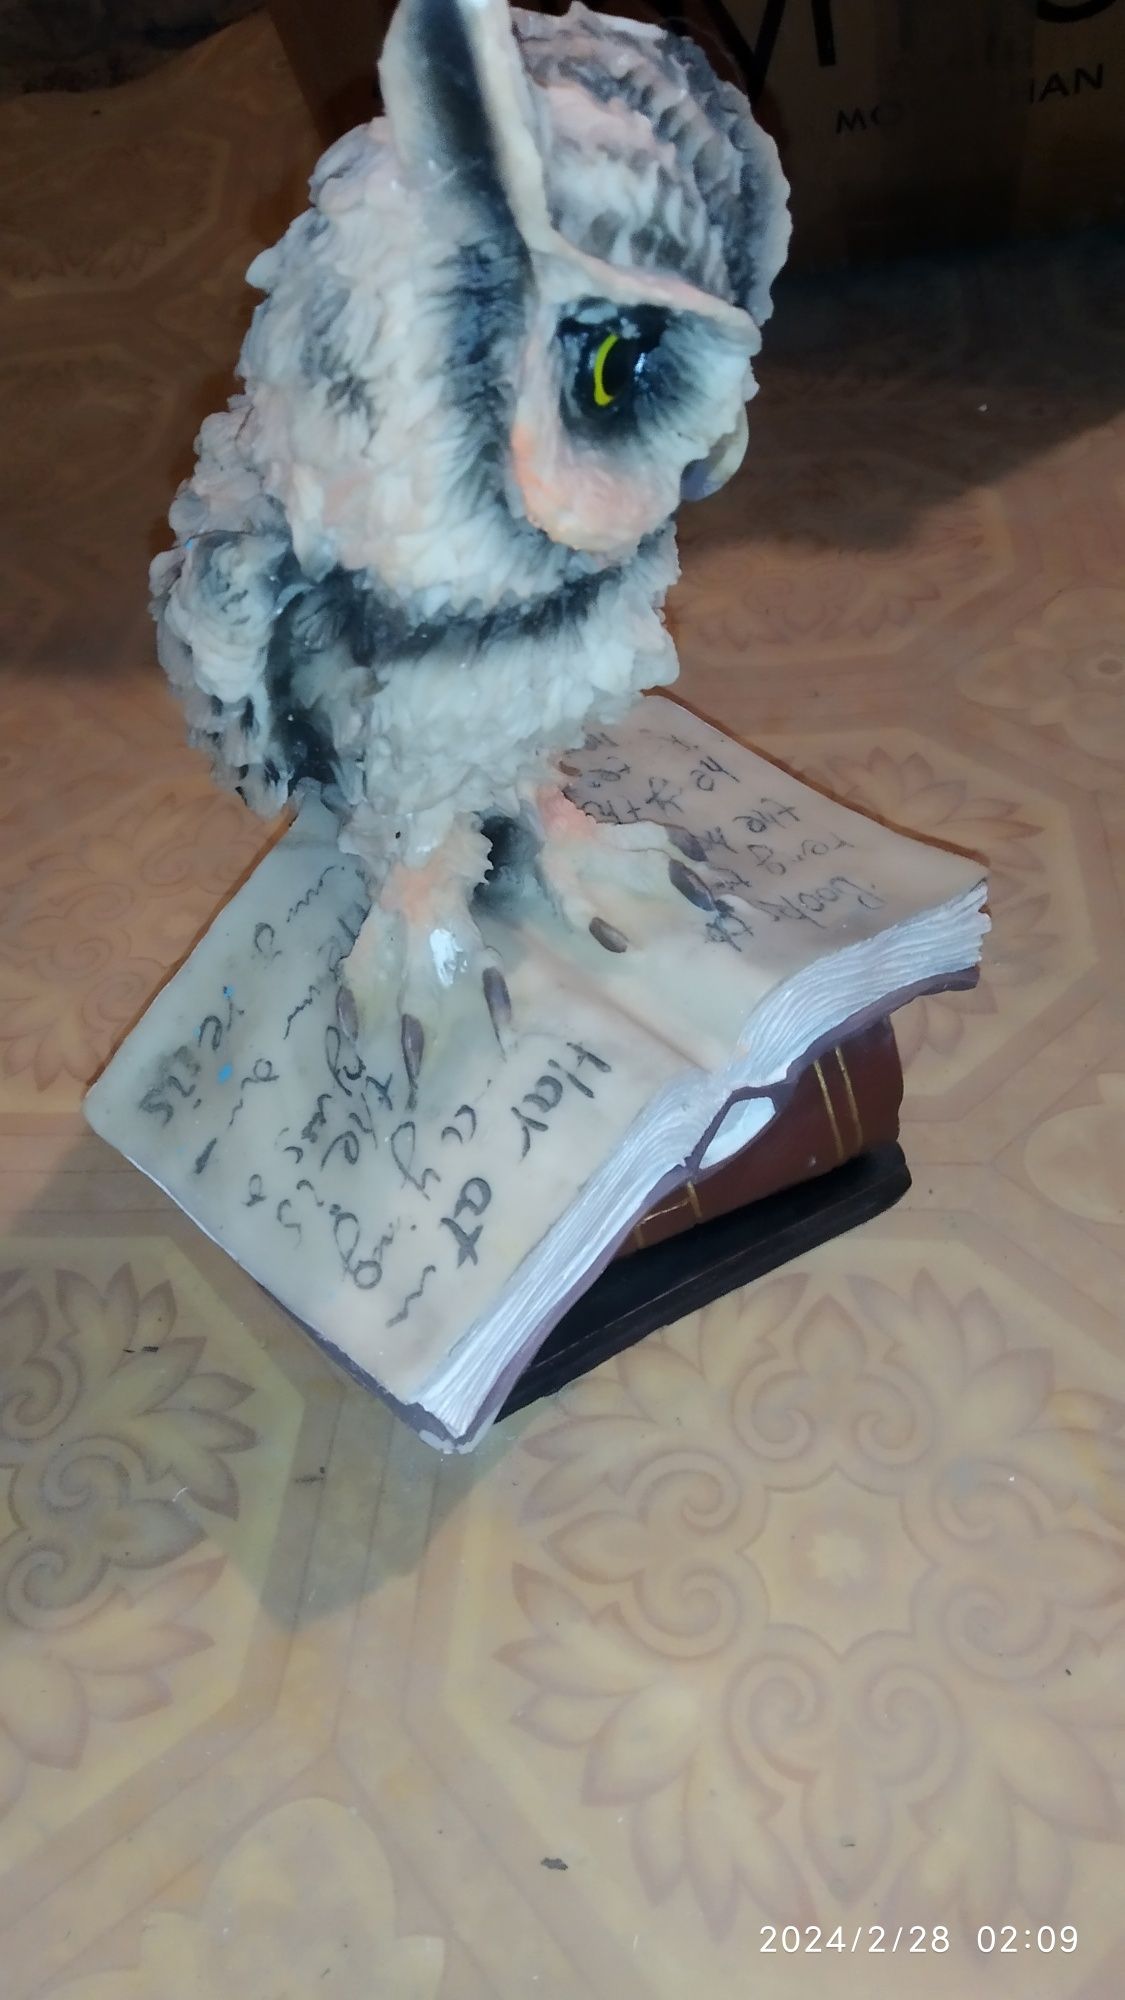 Статуэтка сова на книге